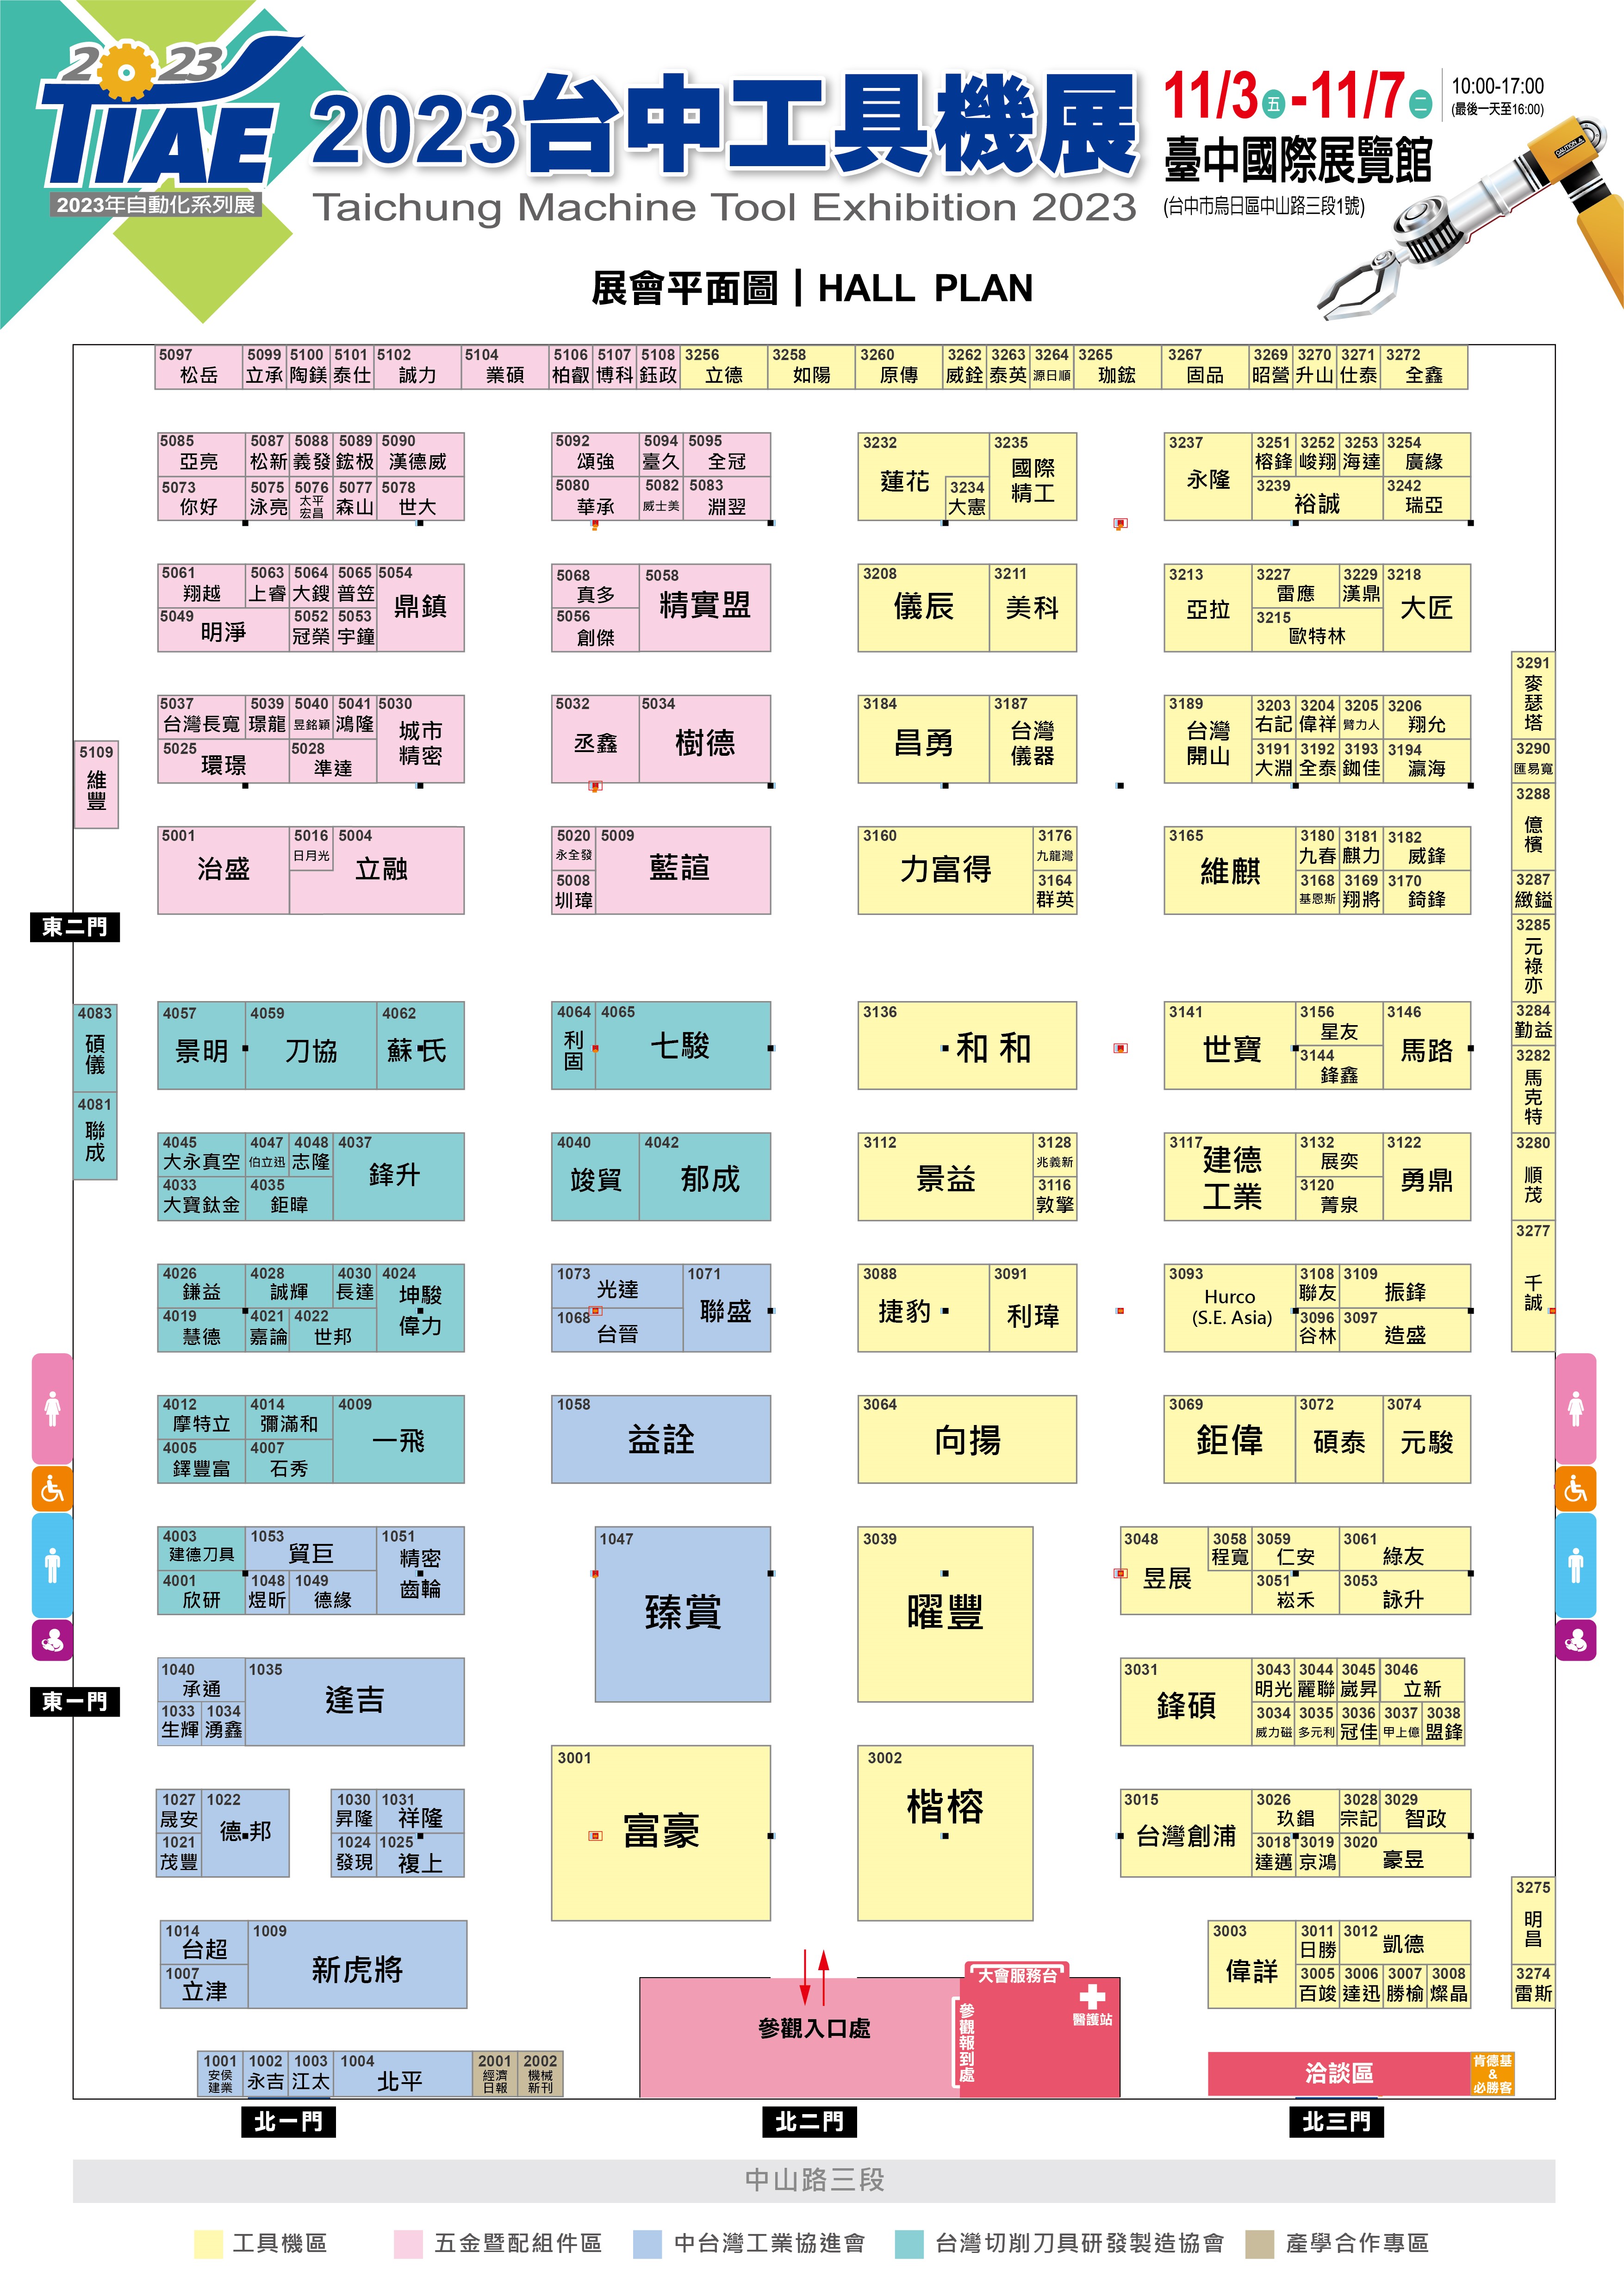 臺中國際展覽館位置圖